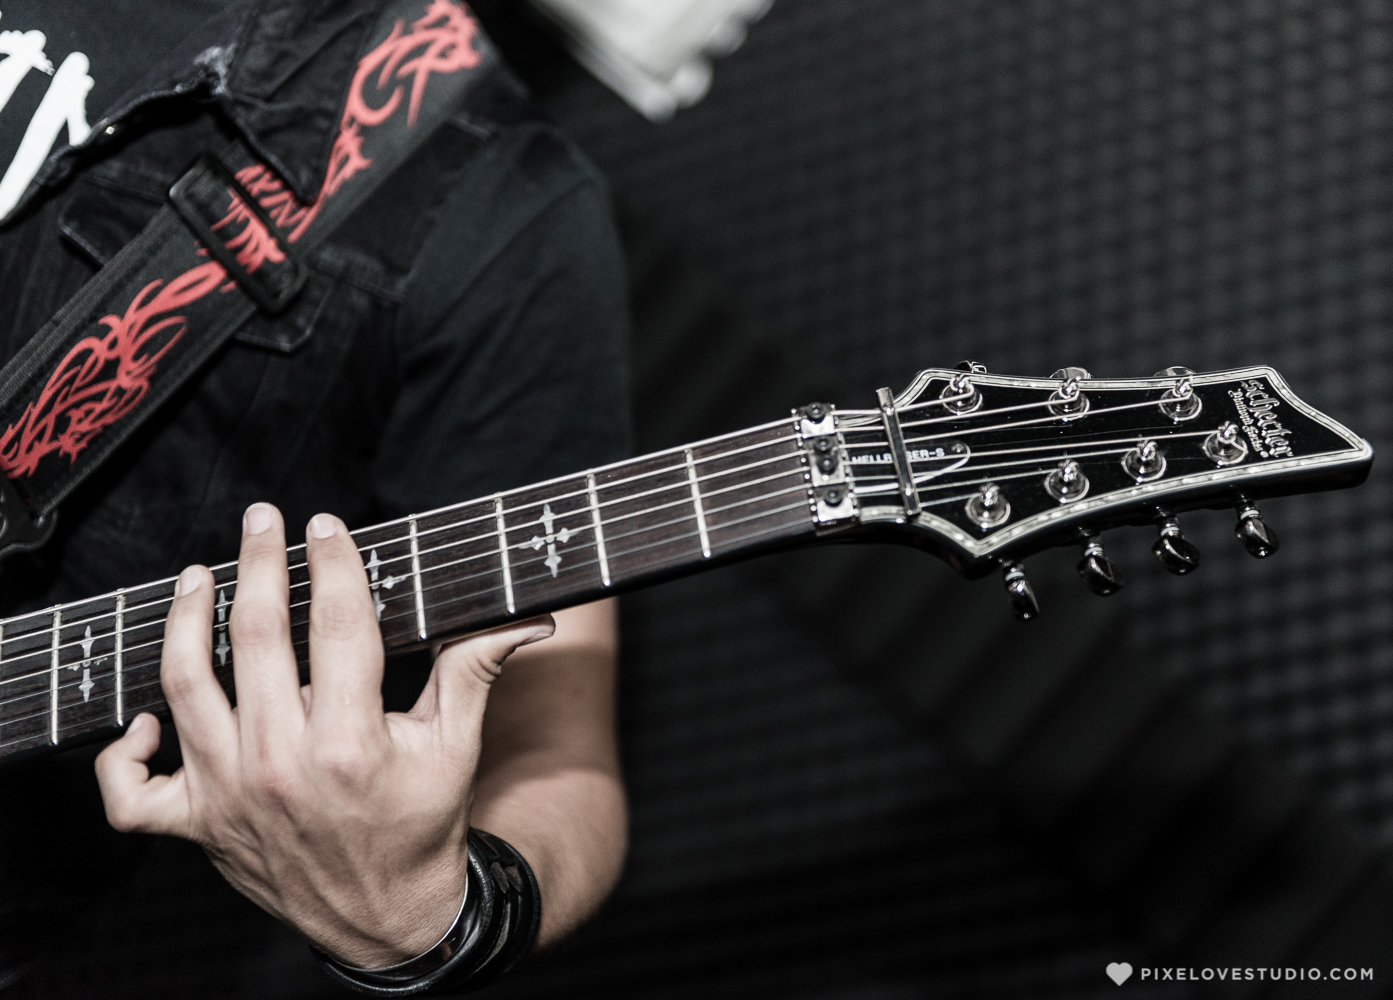 KEINT, banda de rock-metal originaria de Querétaro lanzó su más reciente disco "Sin marcha atrás".